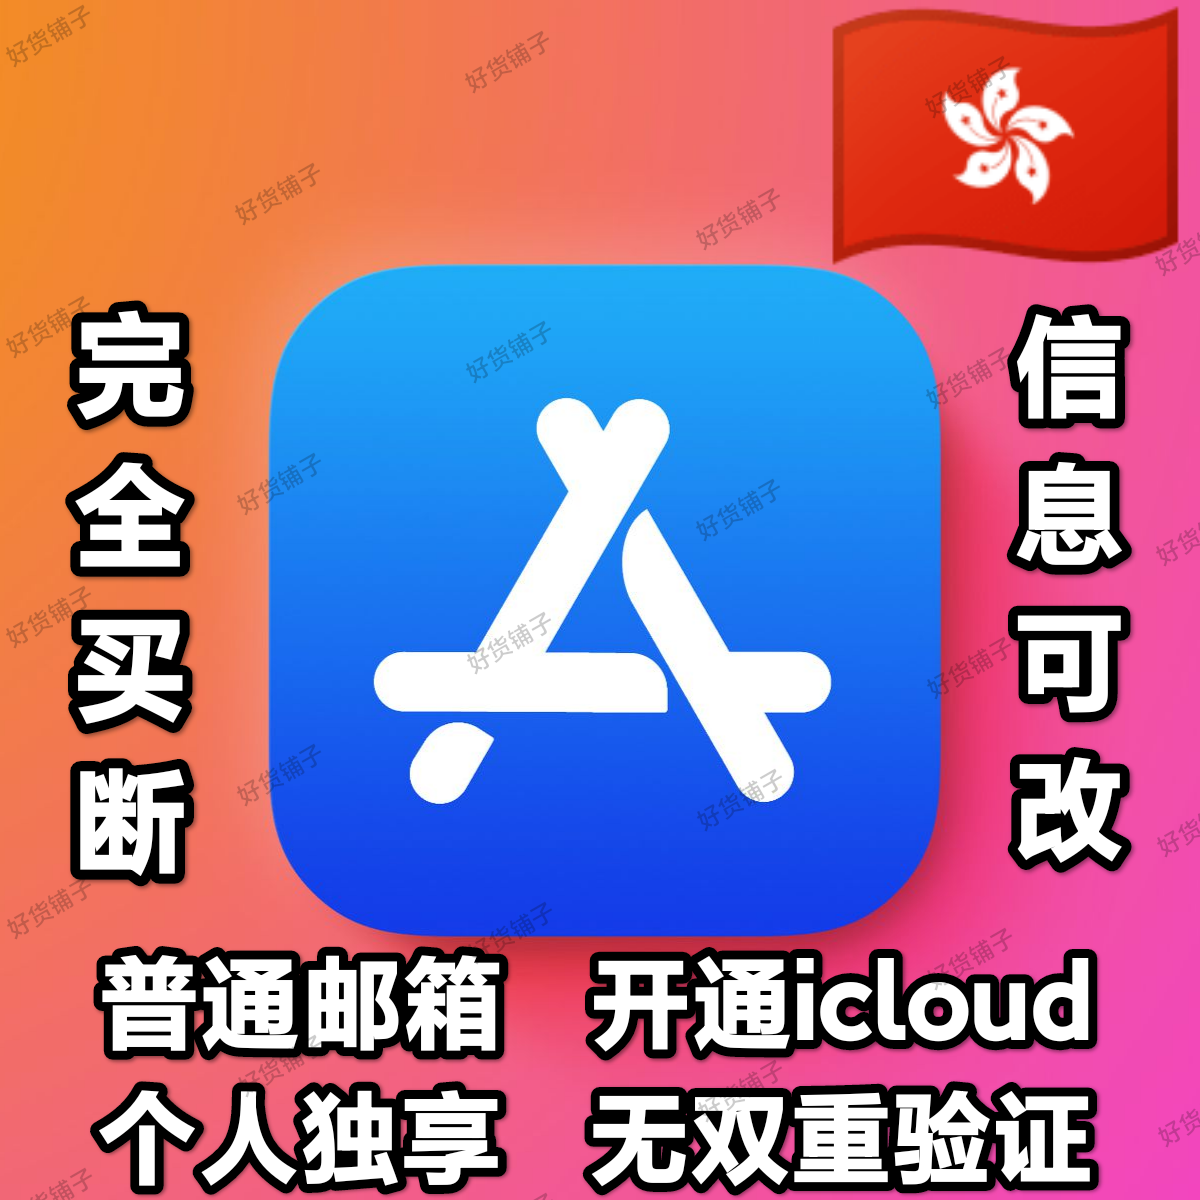 香港全新普通邮箱空白苹果id（无双重验证）（激活iCloud）（自动发货）（教程和说明注意都在下面的详情，请看完）